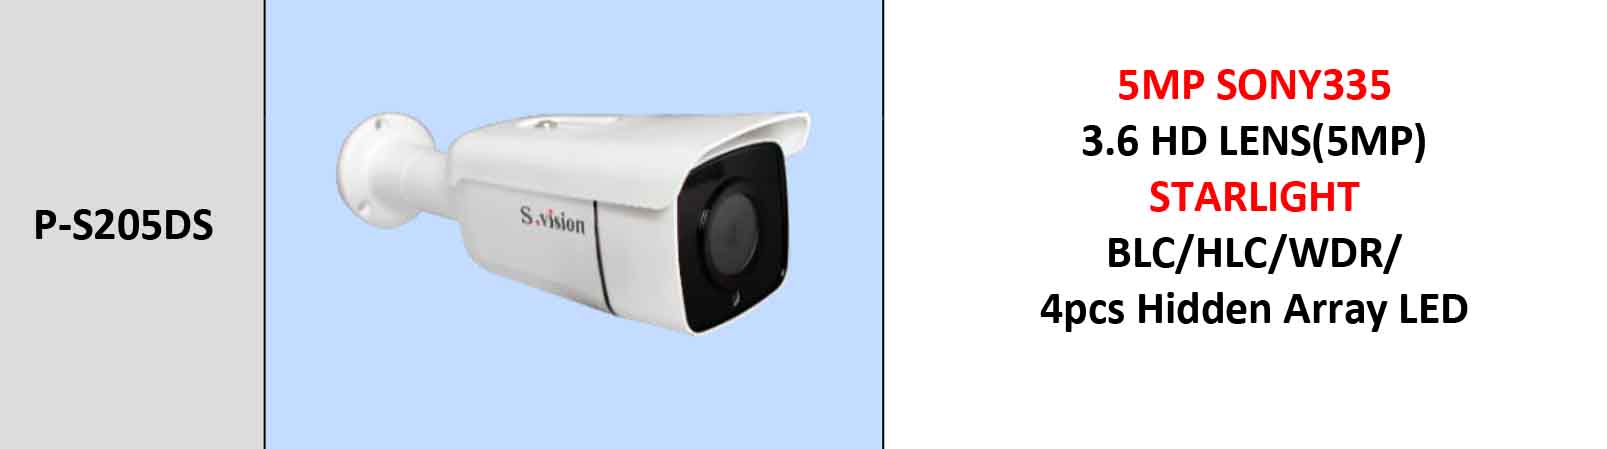 مشخصات دوربین مداربسته بولت اس ویژن مدل Svision P-S205DS